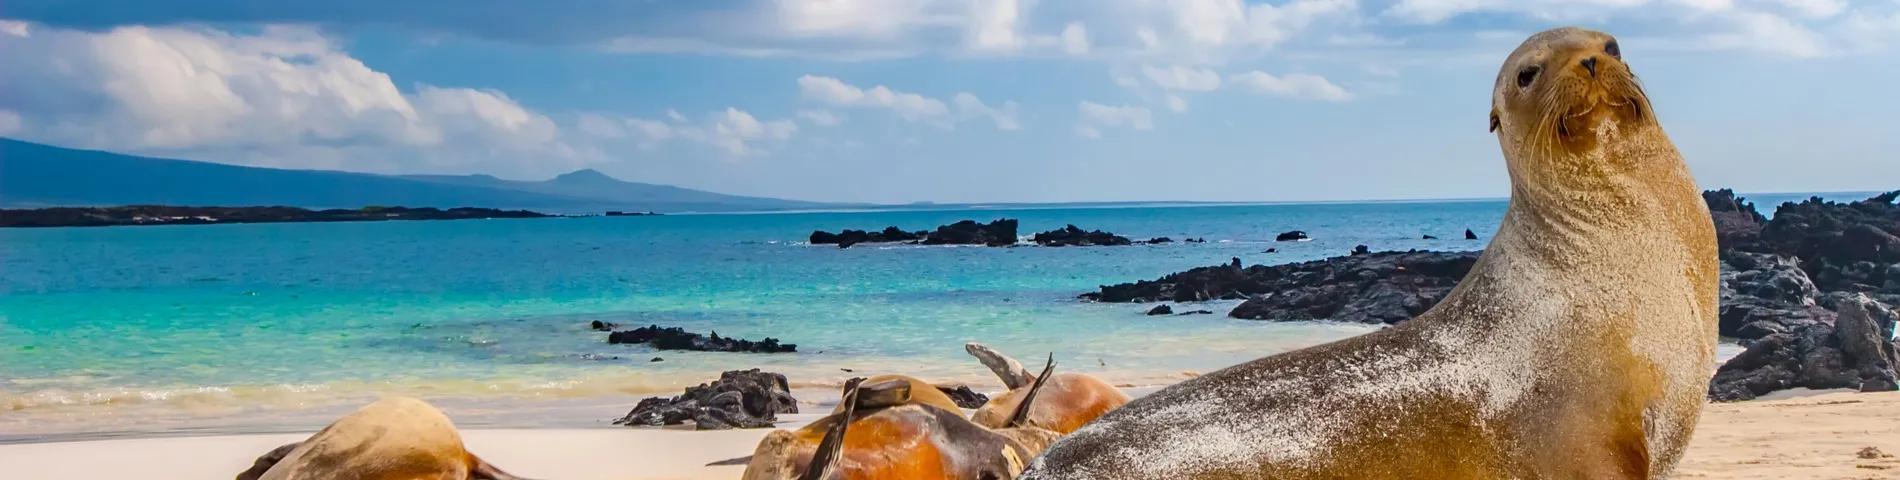 Galápagos-szigetek - 